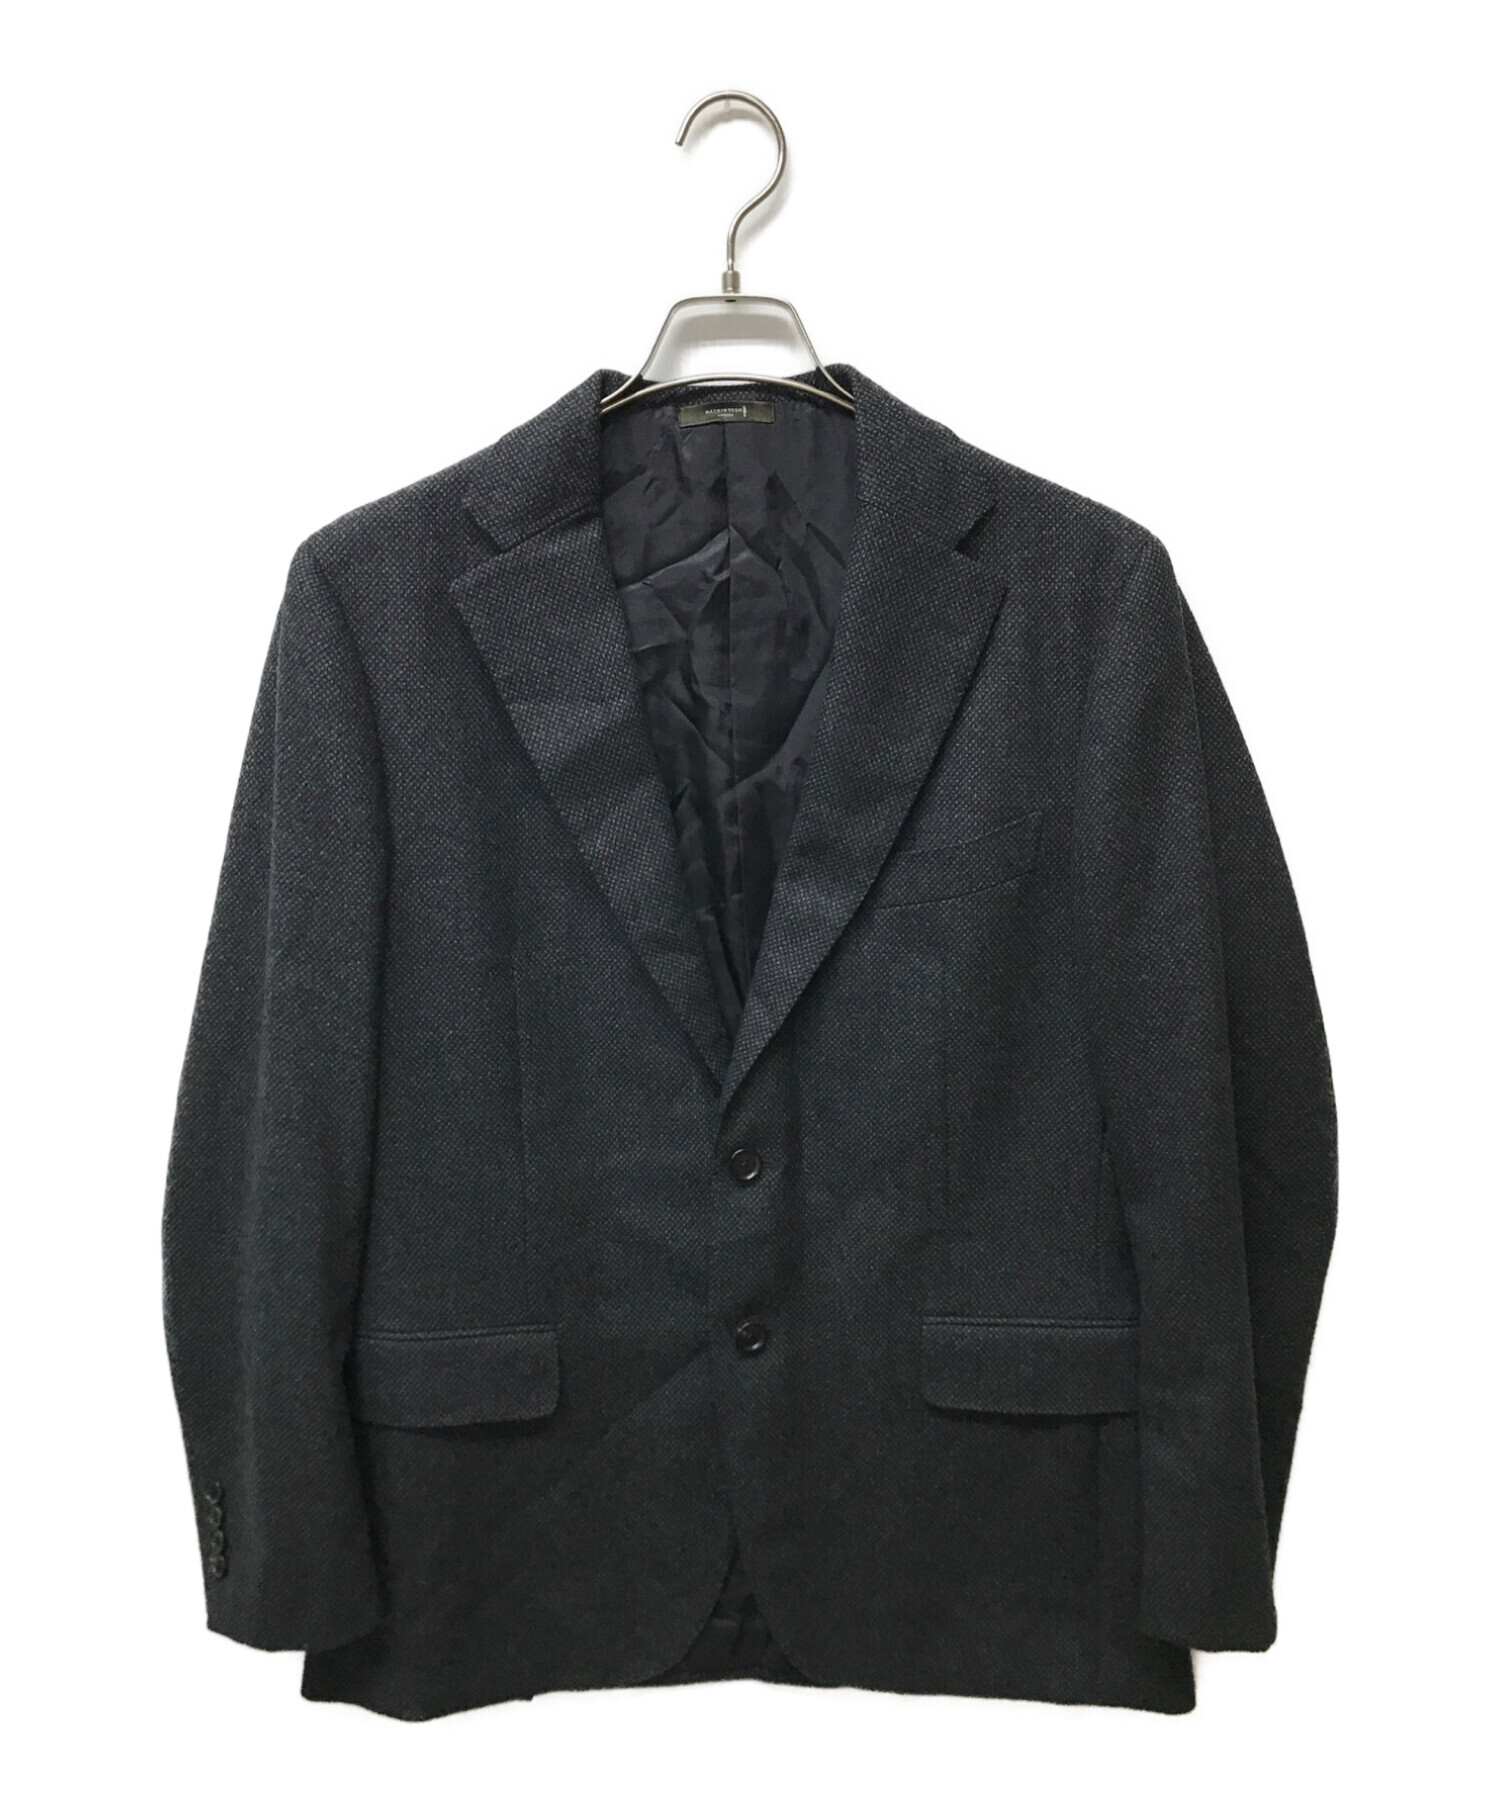 未使用品□MACKINTOSH LONDON/マッキントッシュロンドン イタリア製生地使用 シングルスーツ 上下セットアップ ネイビー 38L 日本製 正規品